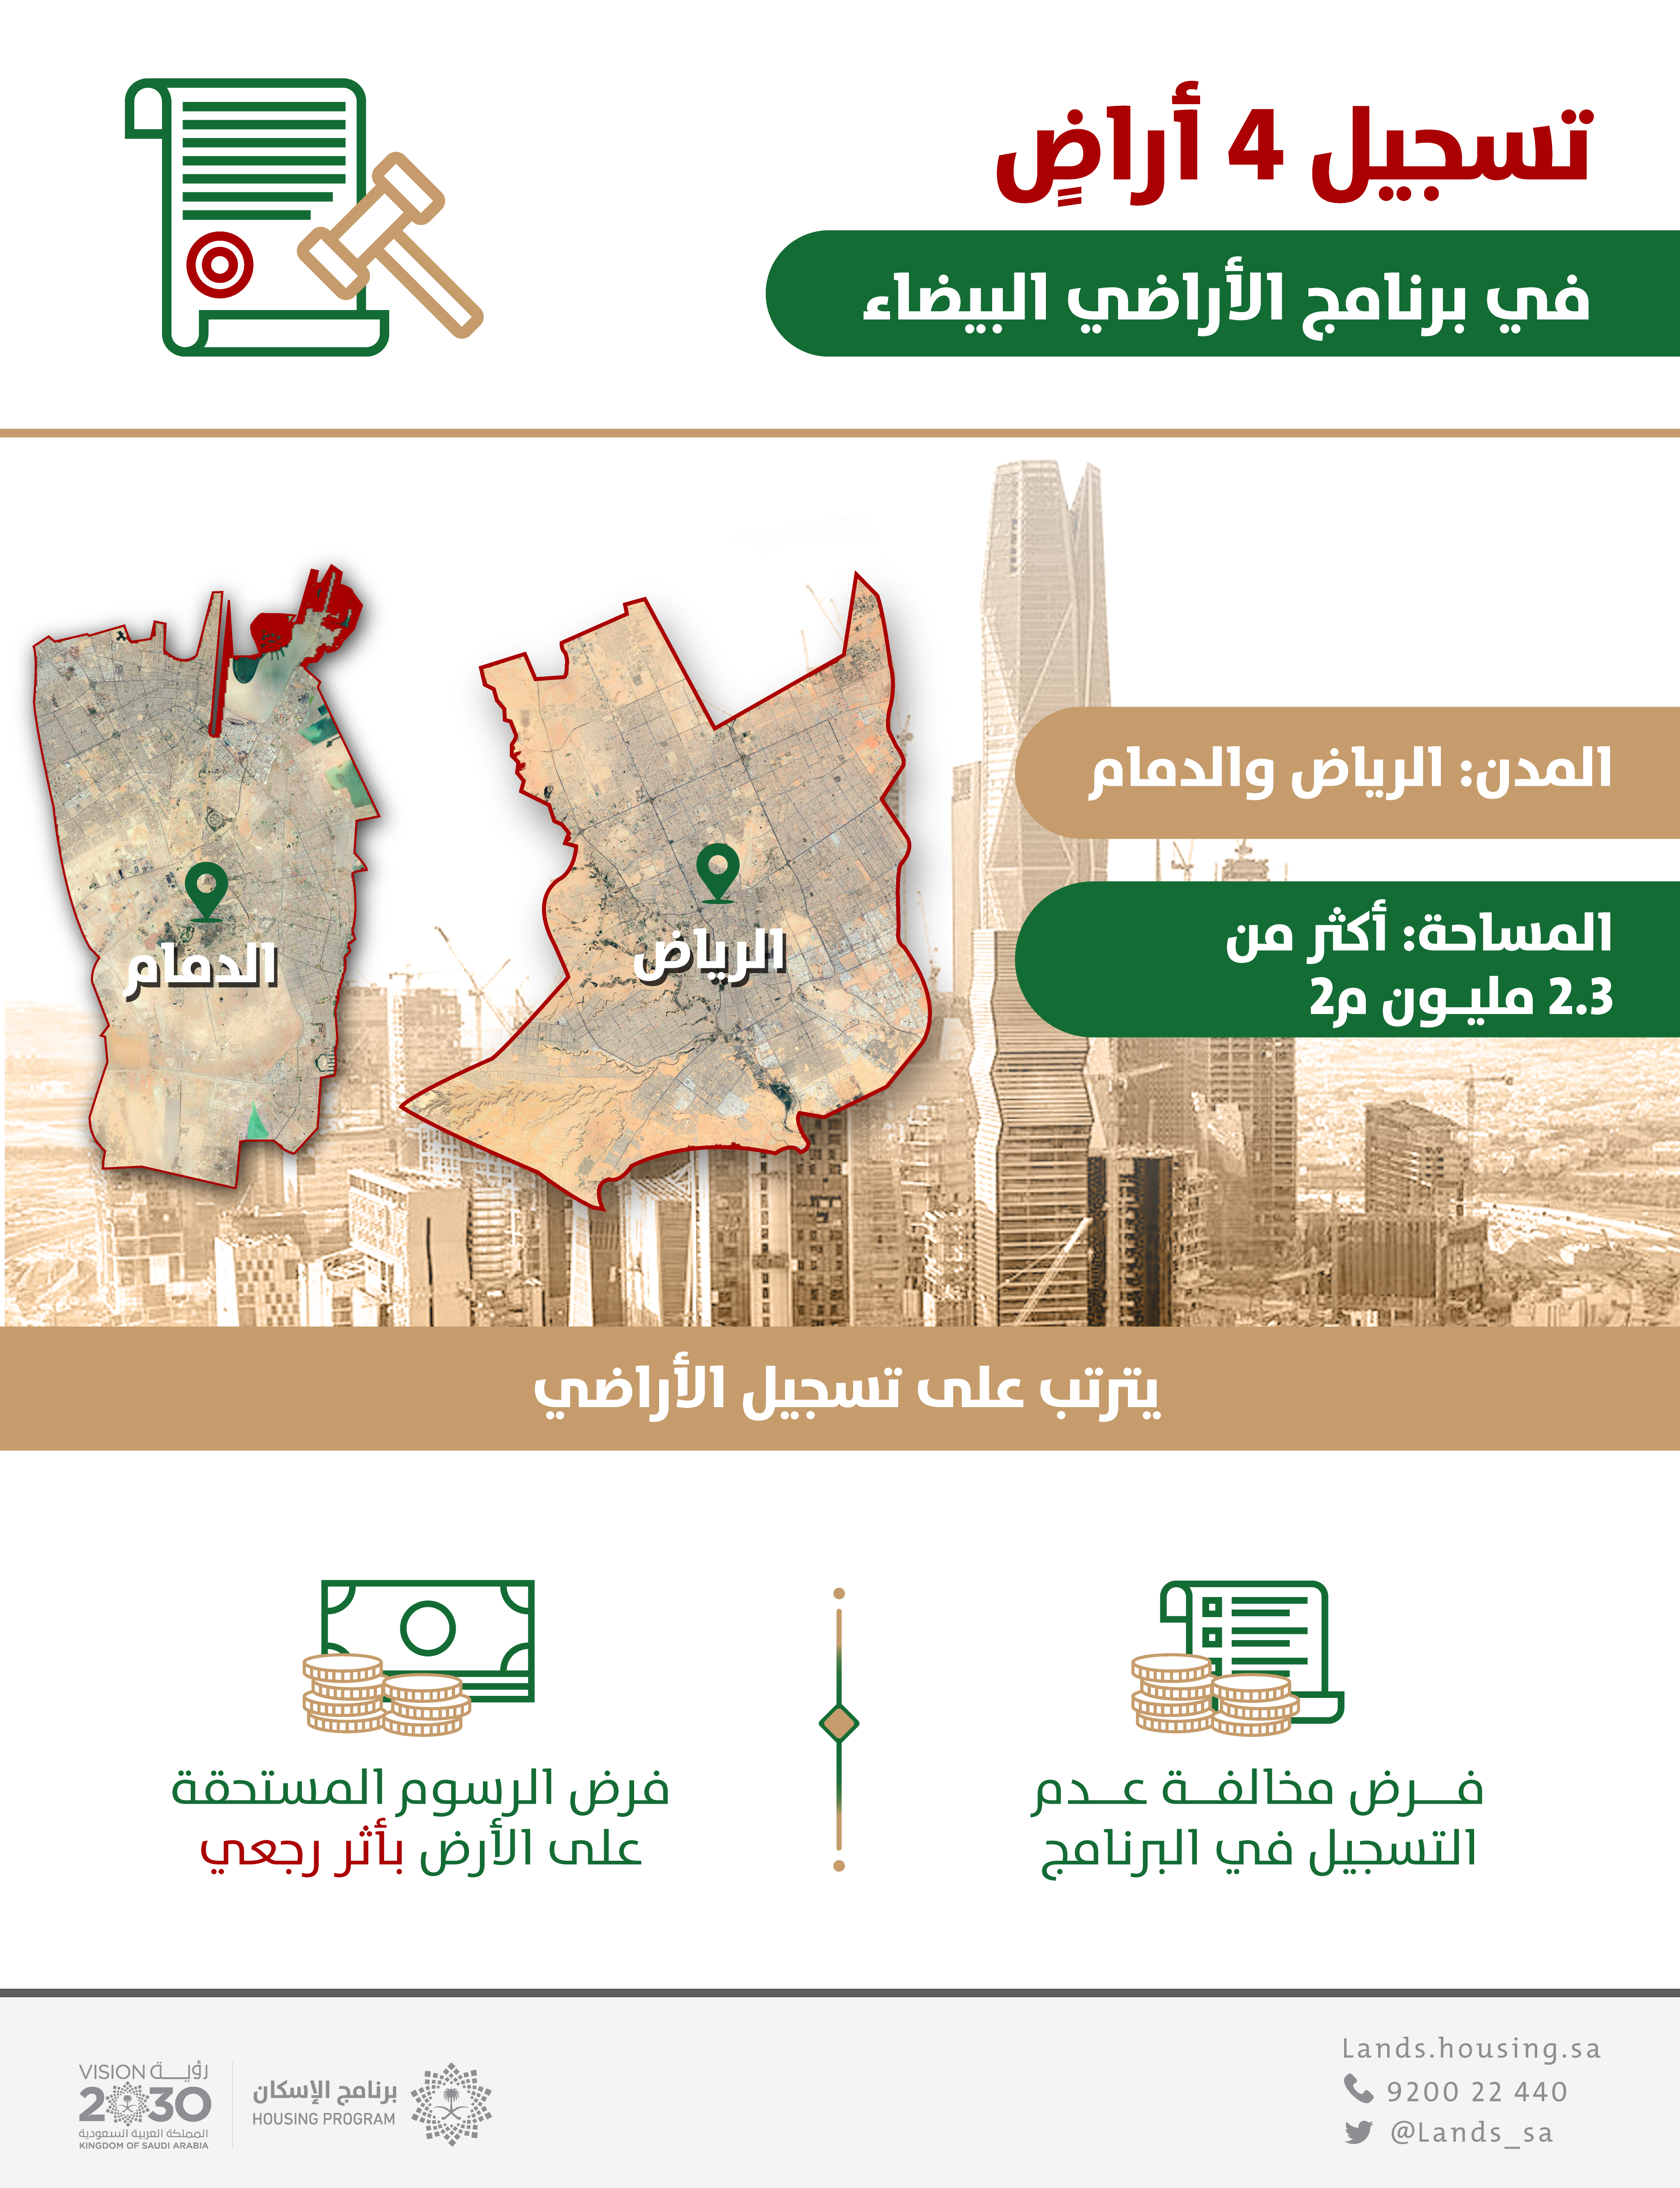 "الأراضي البيضاء": تسجيل 4 أراض في الرياض والدمام بمساحة 2.3 مليون م2 وفرض الرسوم عليها بأثر رجعي